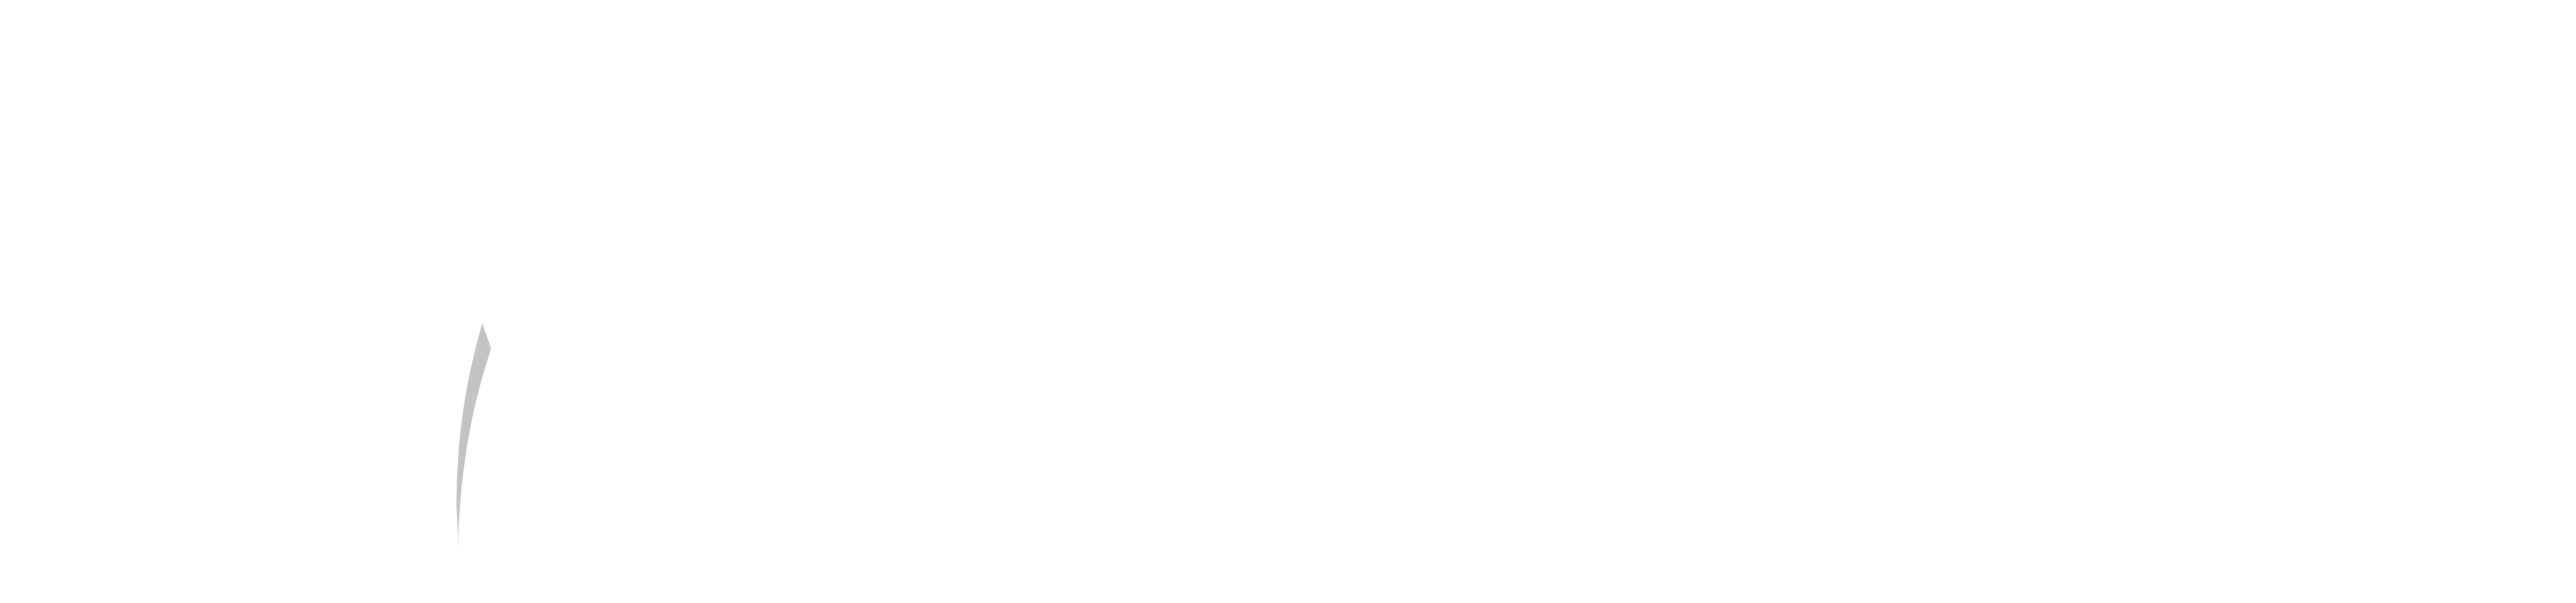 metabillers logo footer